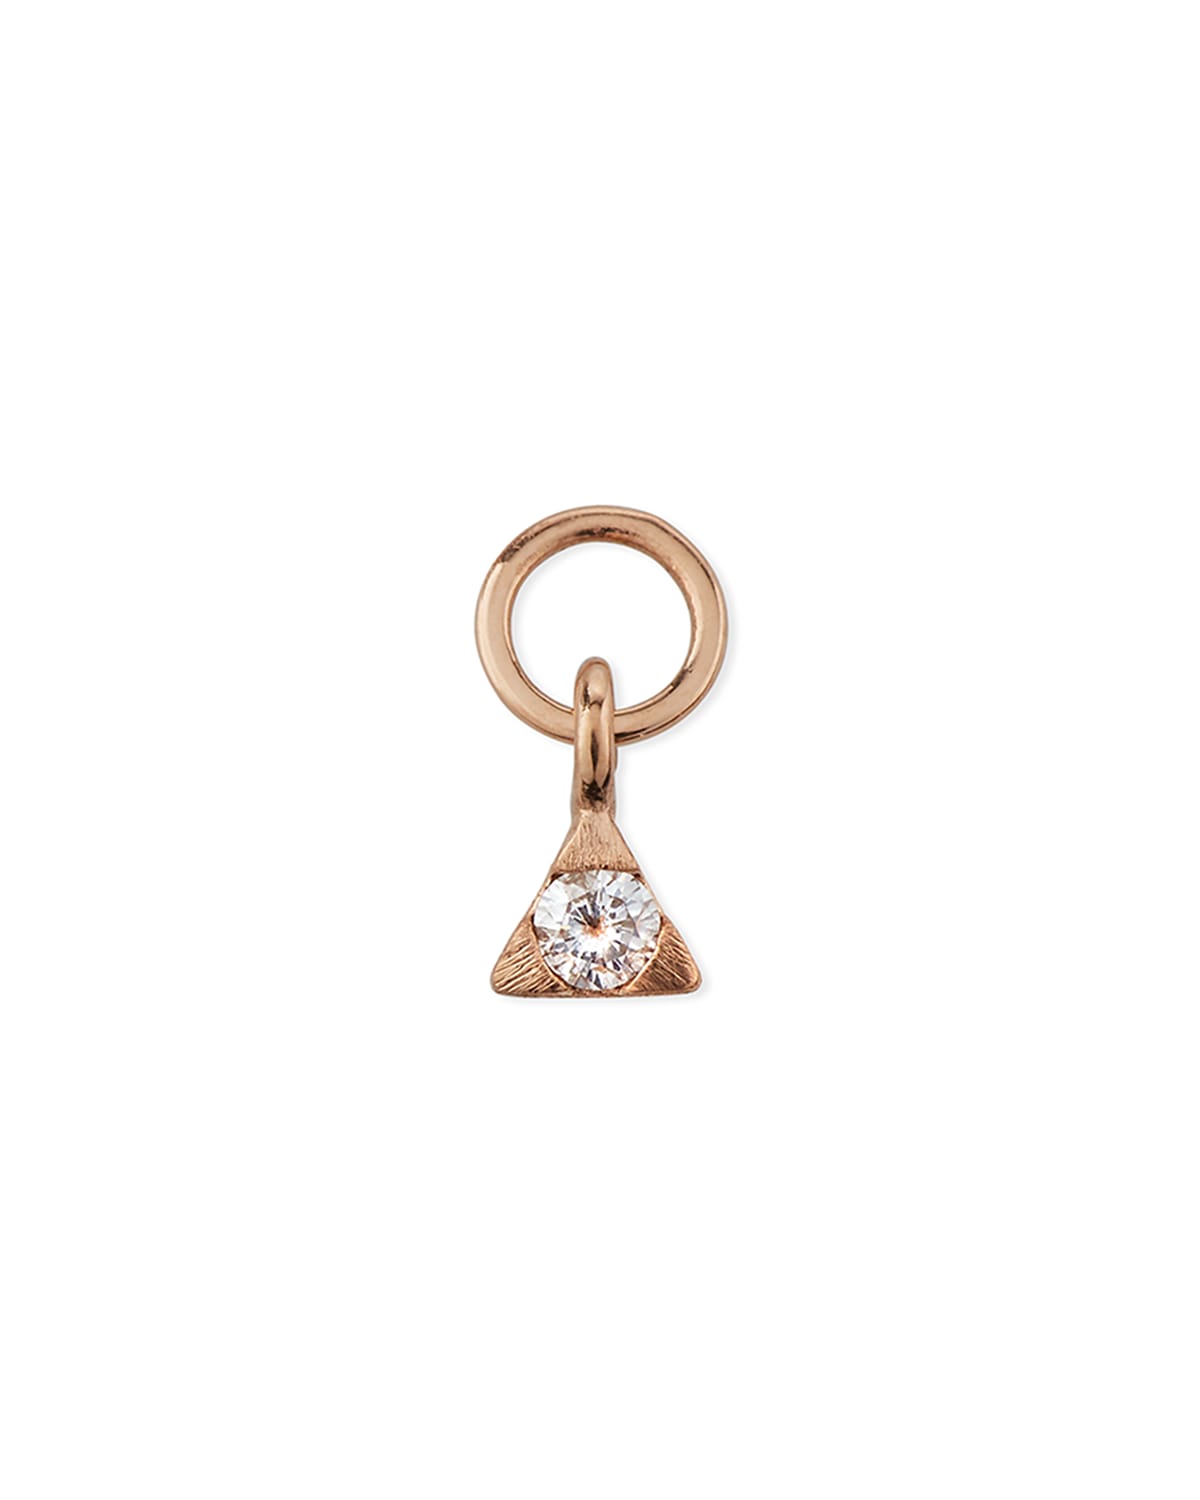 Jude Frances 18k Rose Gold Petite Diamond Trillion Earring Charm, Single